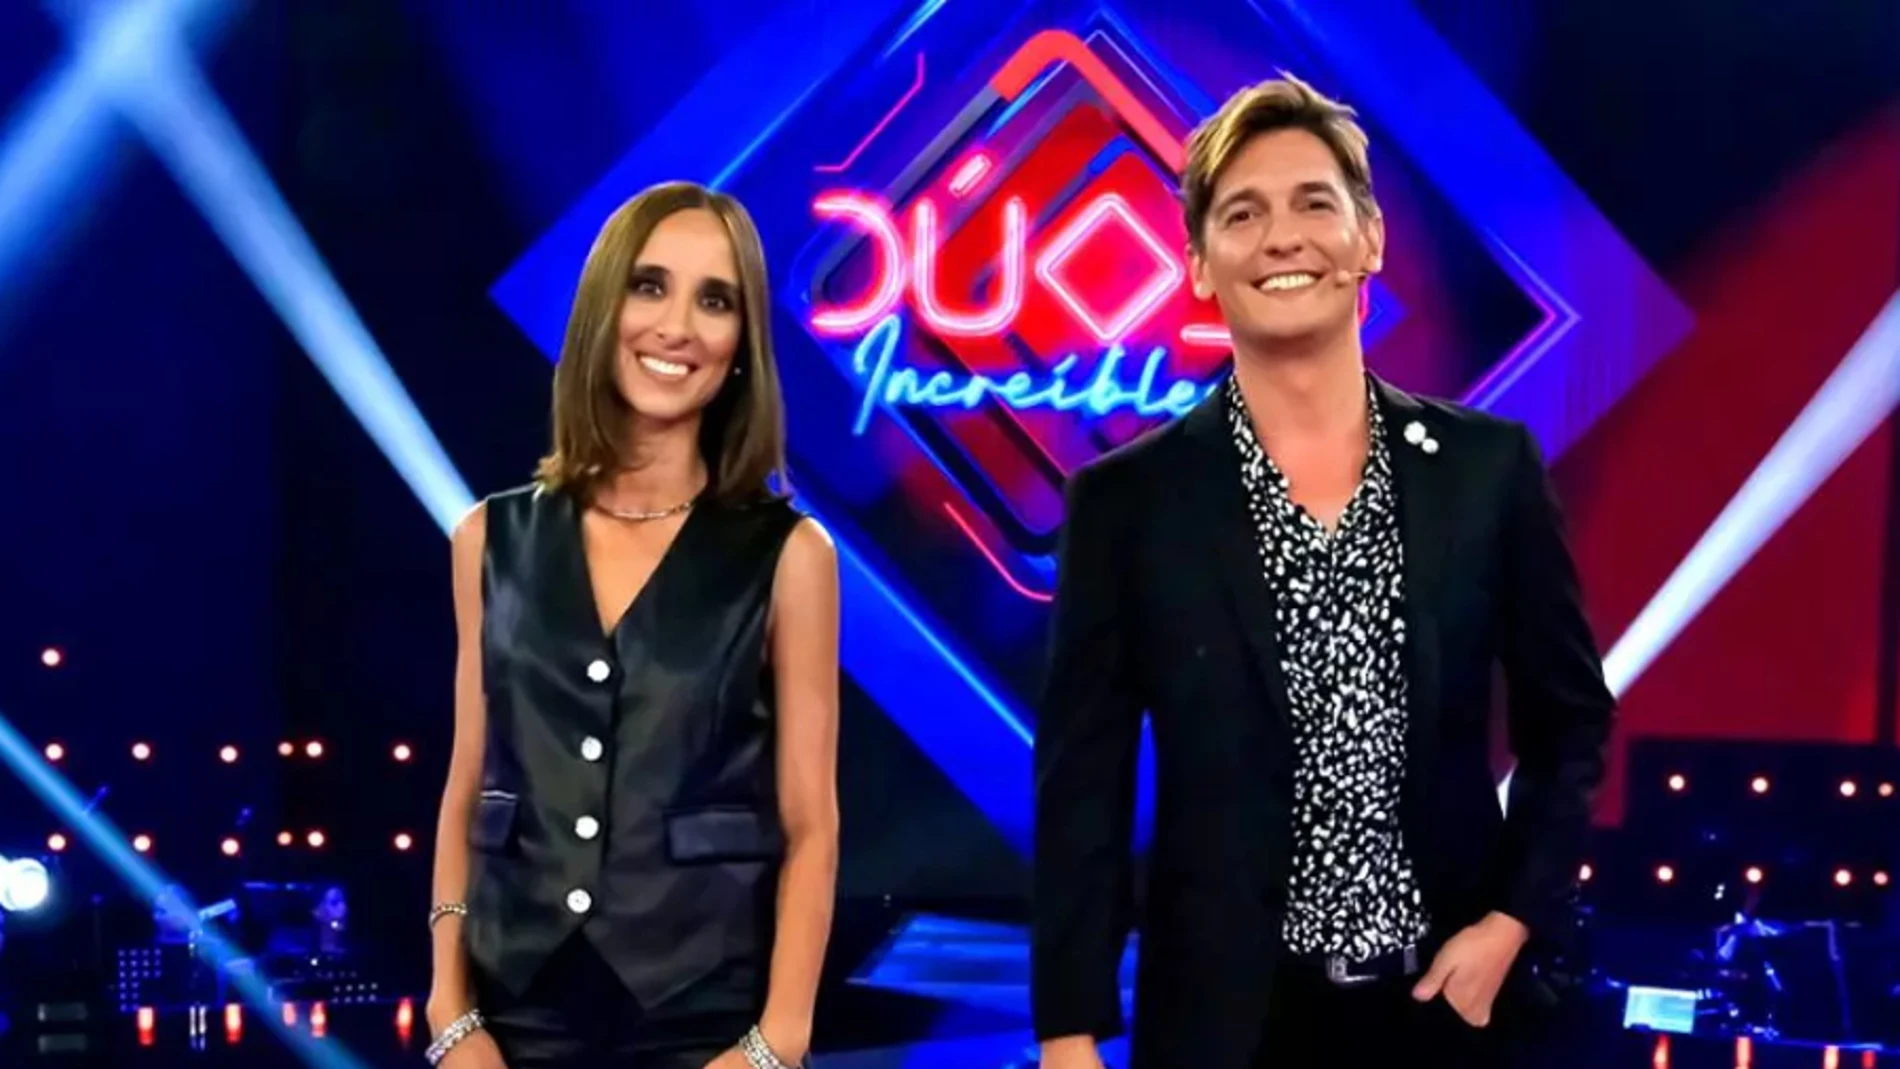 Julia Varela y Xavi Martínez, presentadores de 'Dúos increíbles 2'